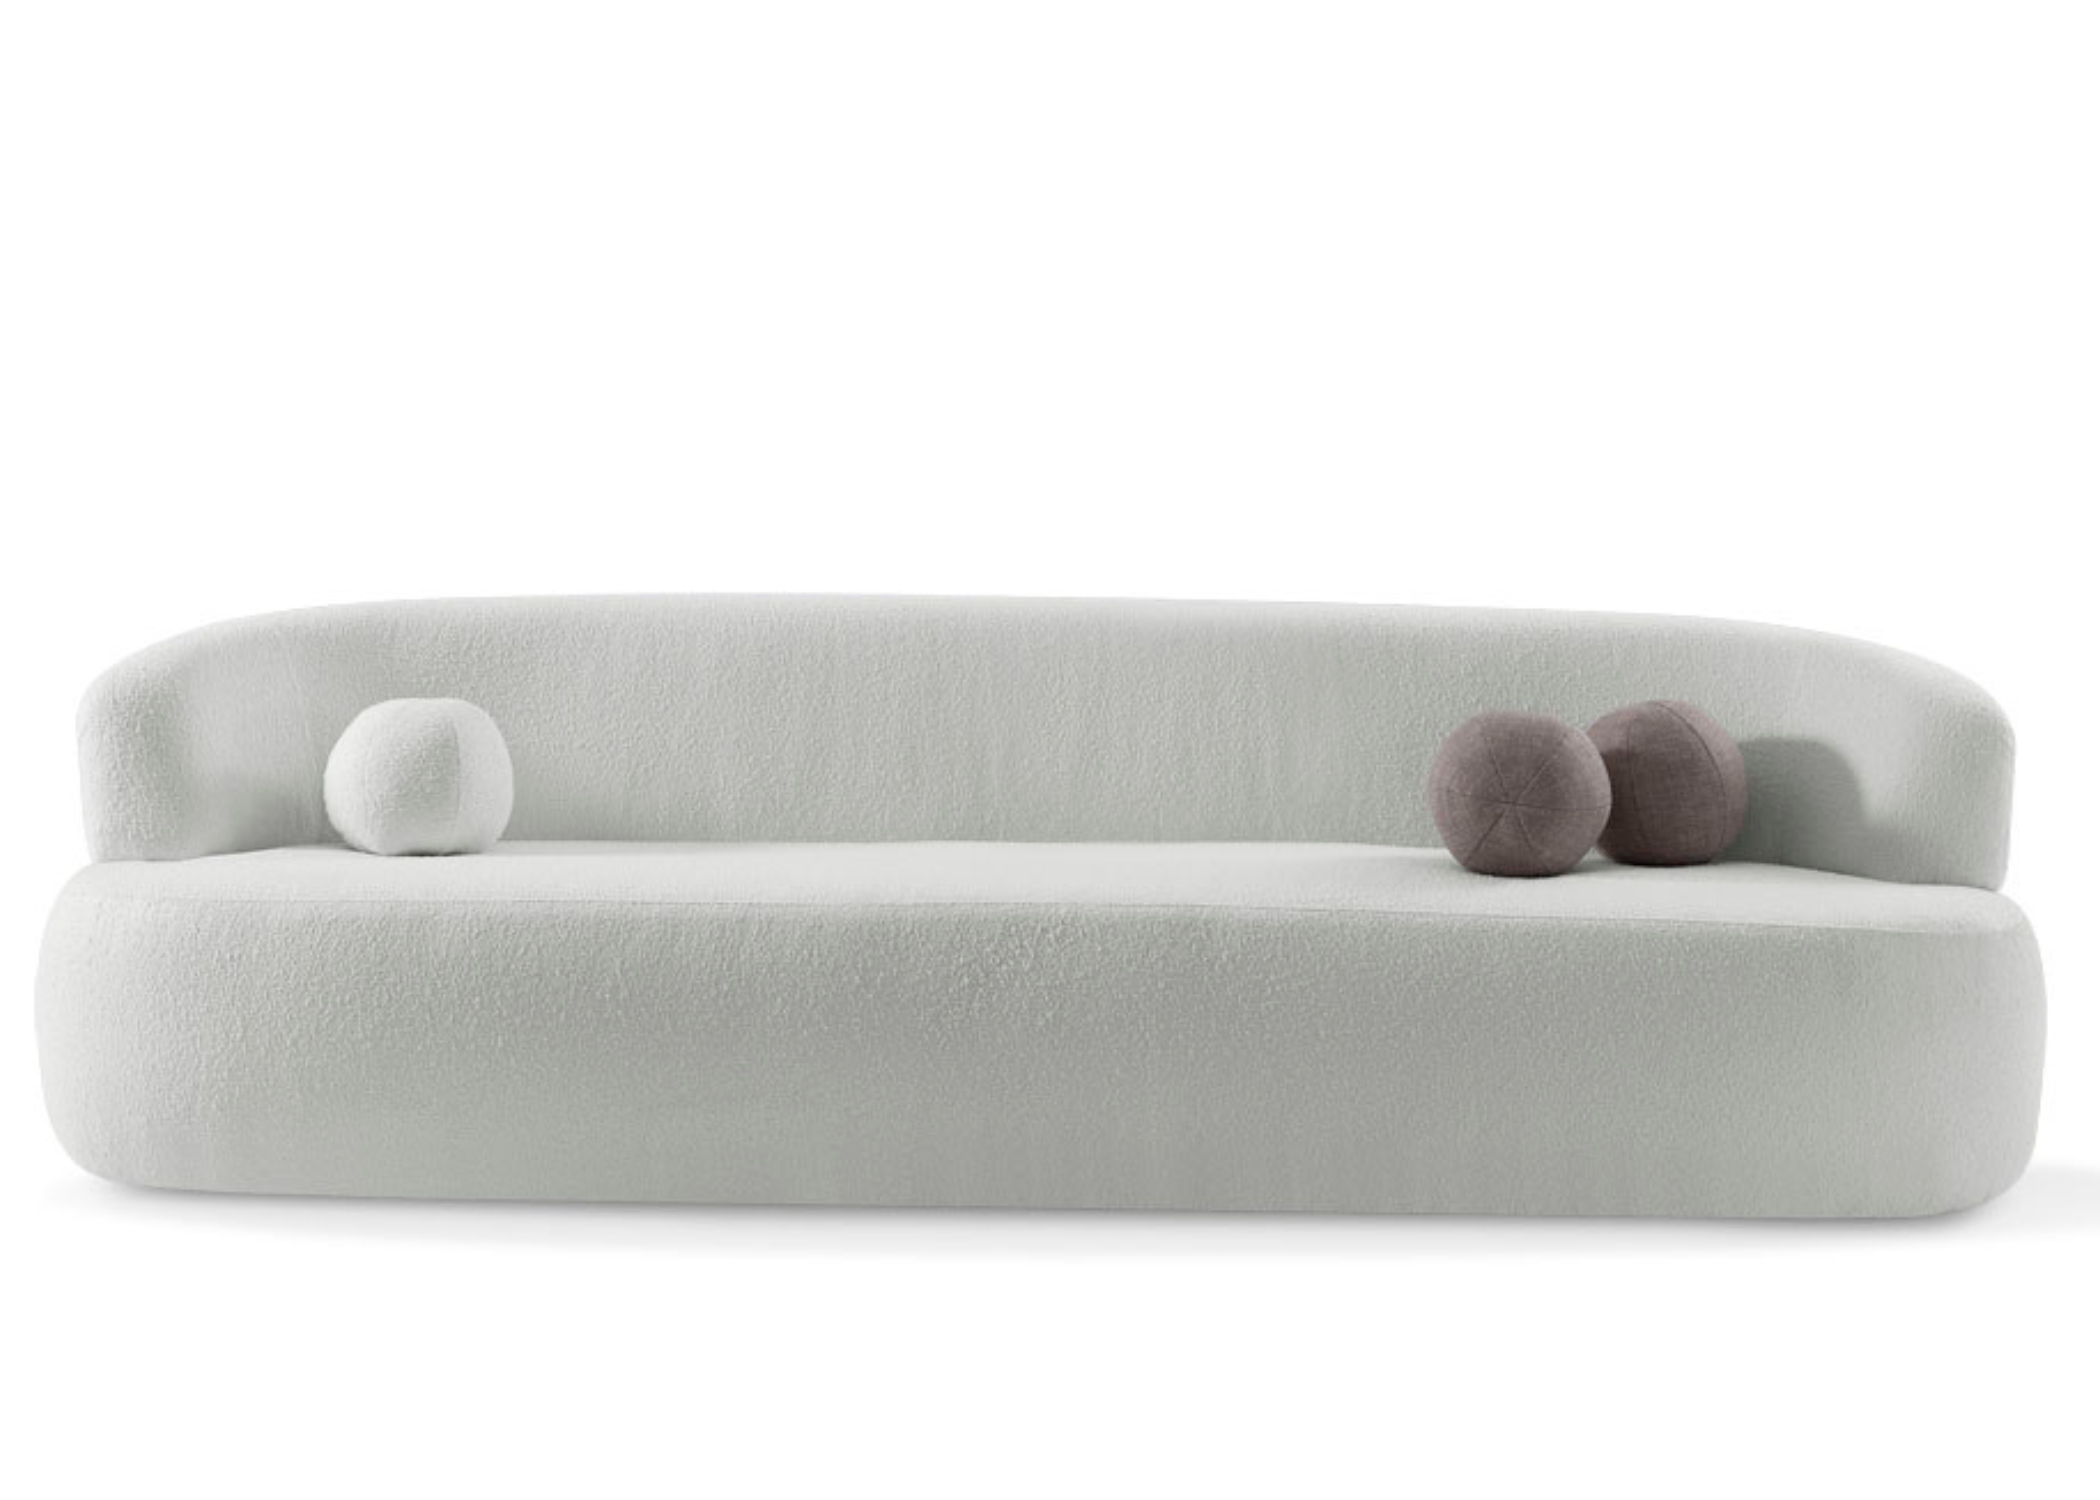 Receba amigos e familiares com estilo, escolhendo o sofá Sândalo para a harmonia perfeita entre estética e conforto.